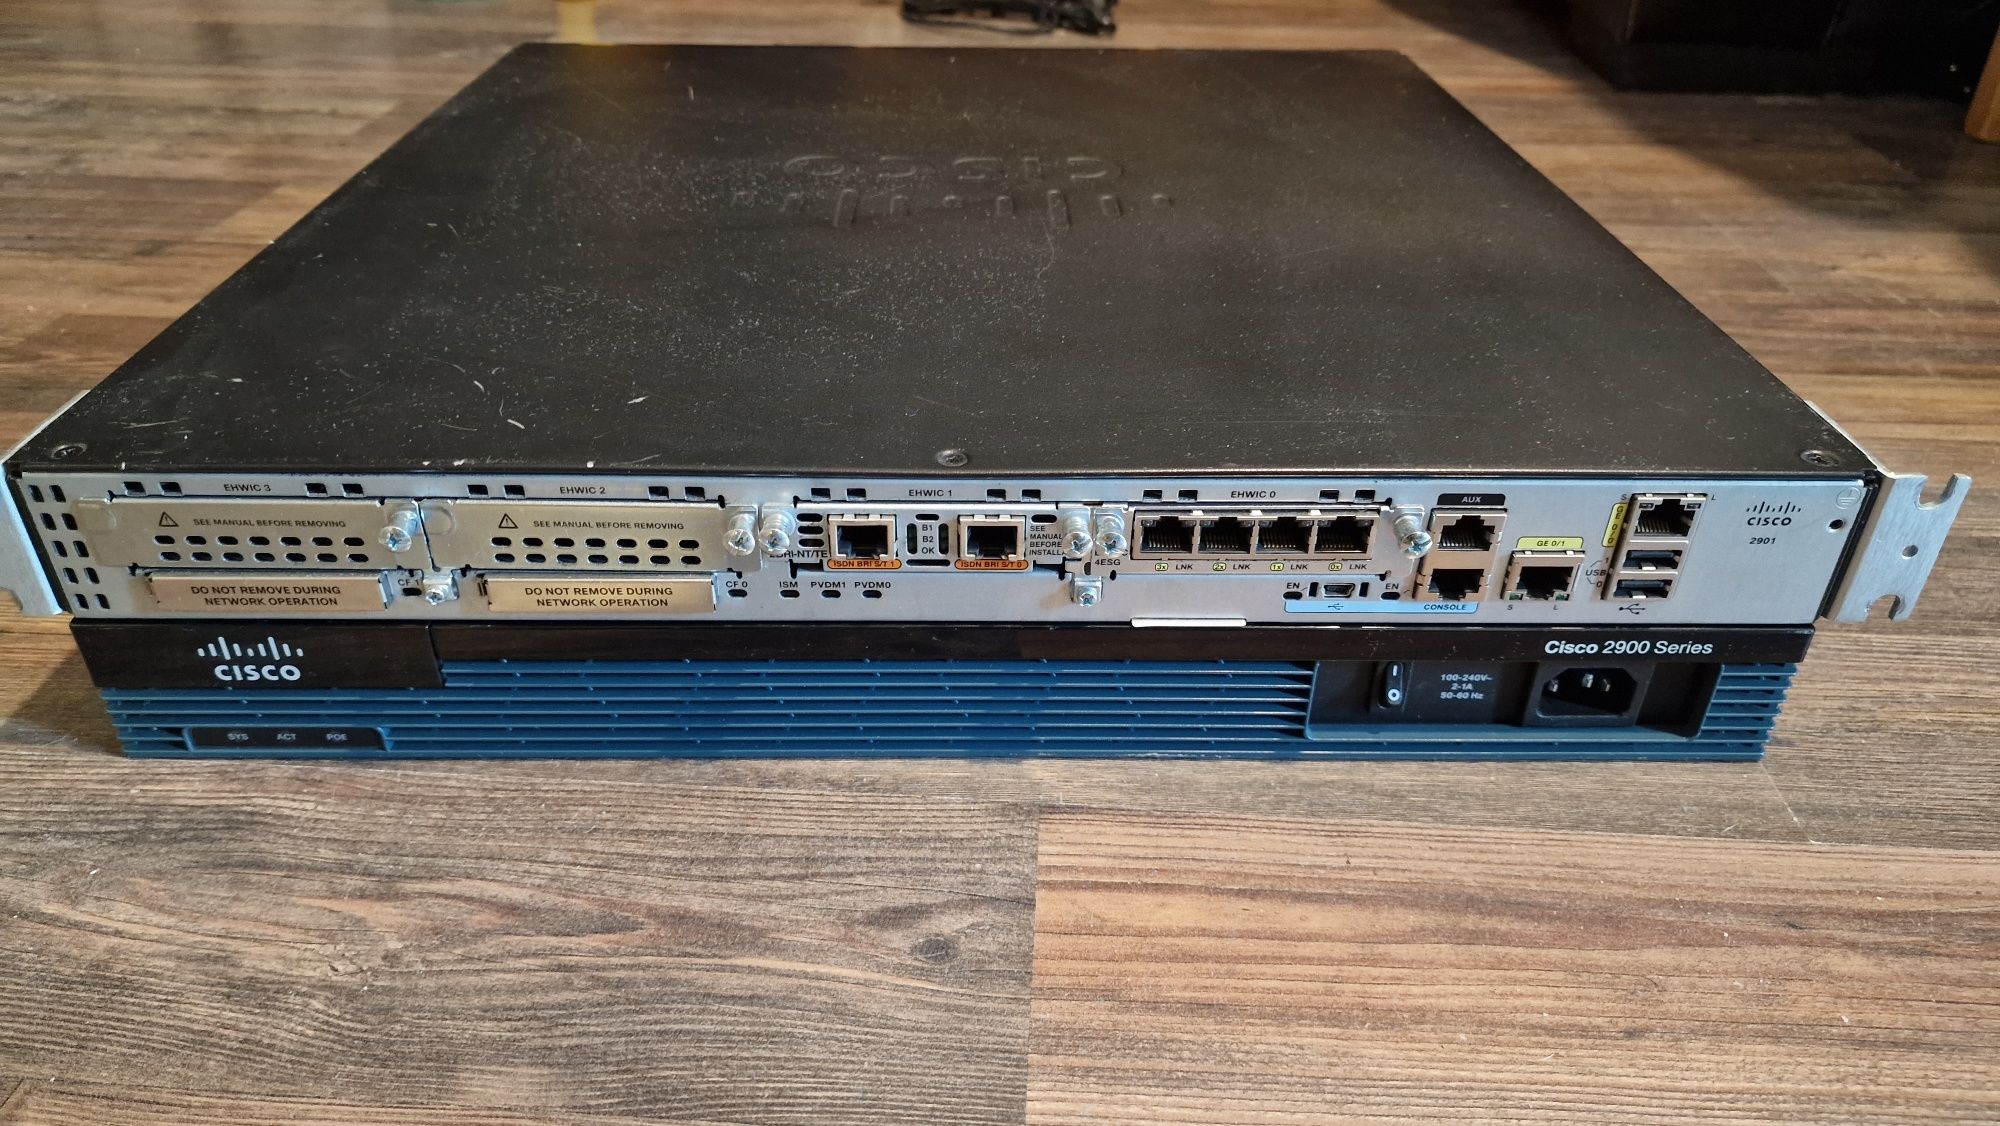 Cisco Router 2901 k9 v06 + ehwic-4esg module